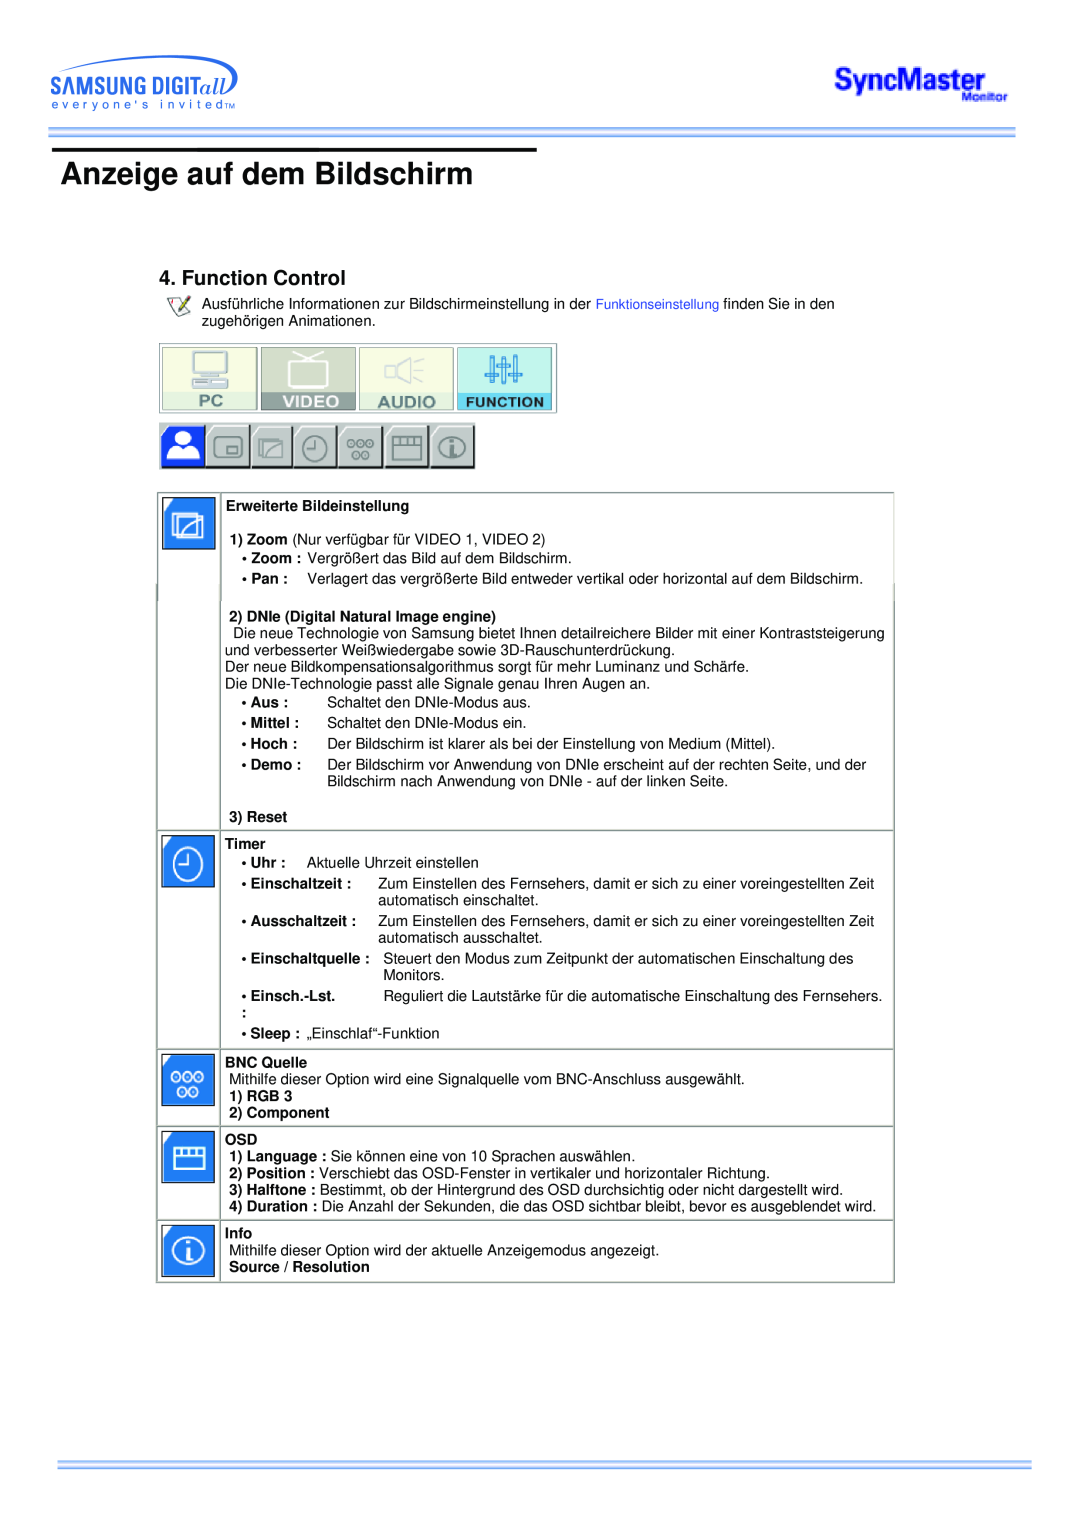 Samsung CK40BSNS/EDC Anzeige auf dem Bildschirm, Function Control, Erweiterte Bildeinstellung, Reset Timer, BNC Quelle 